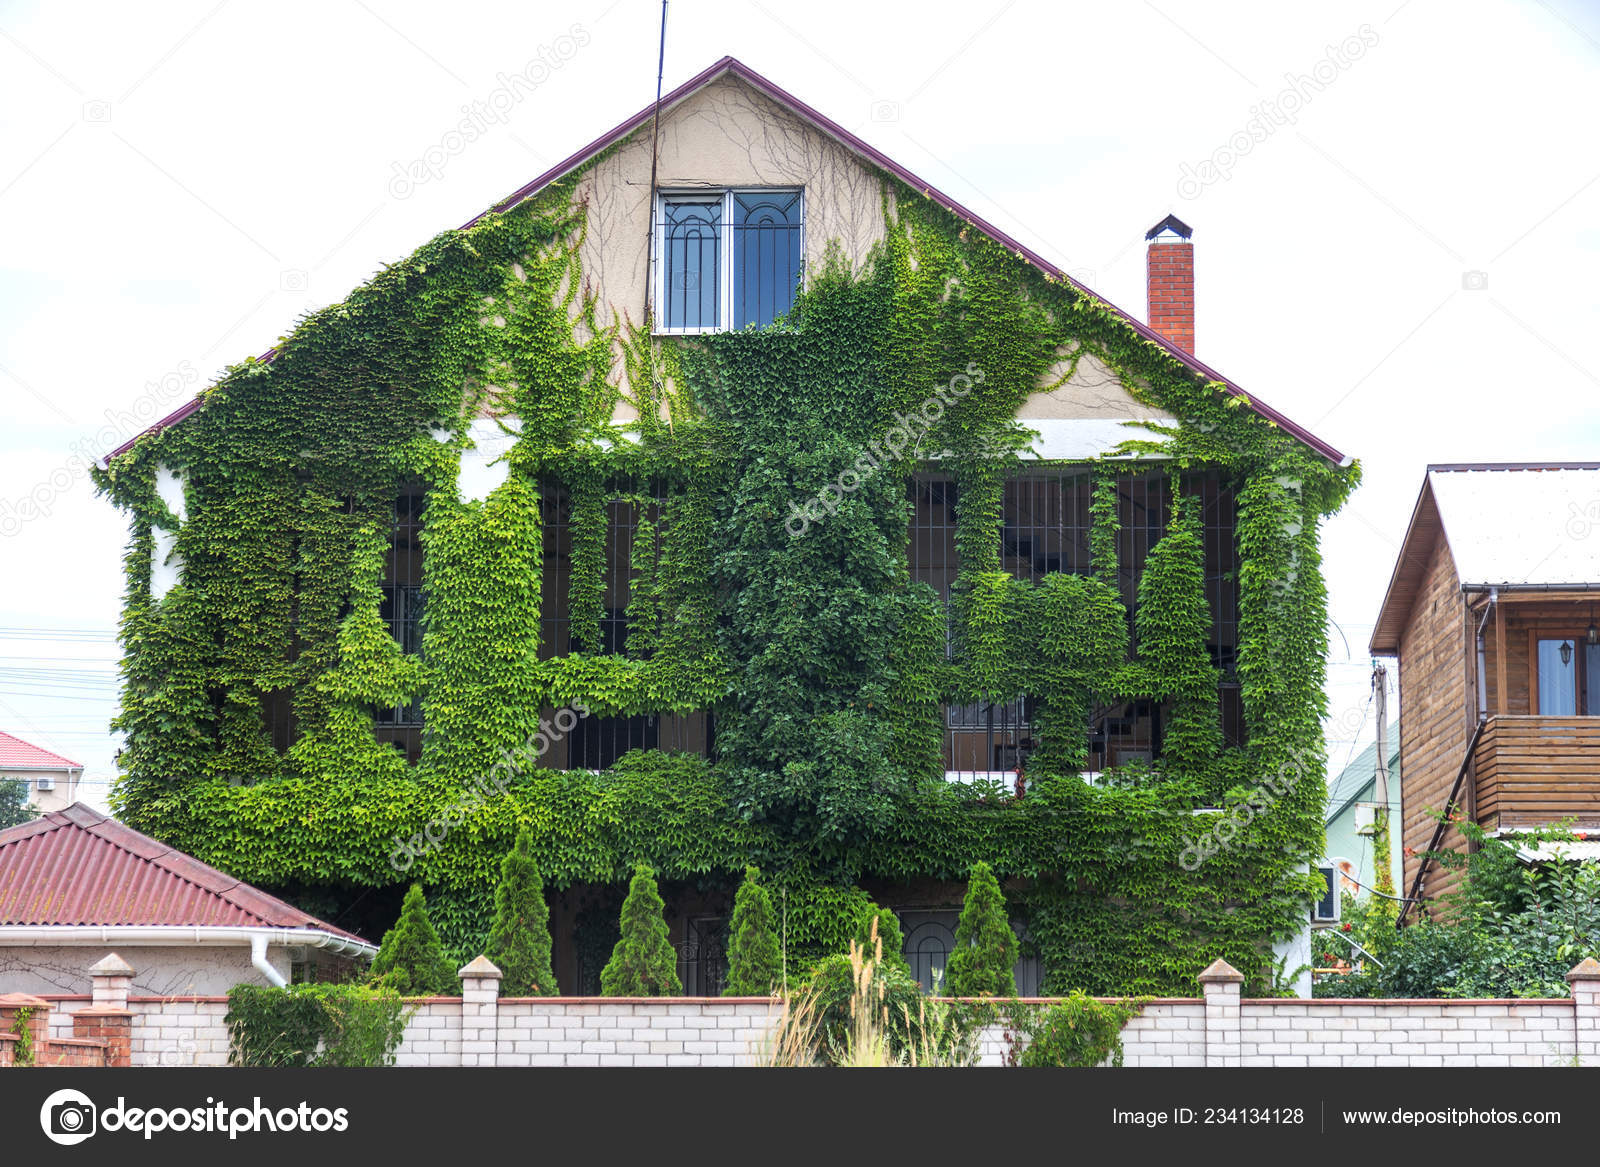 現代の家は 緑のツタで覆われて グリーンのツタをカーリングは 家の壁に生えています 外から家の壁にツタに覆われた家の窓を見る 生態学と都市 都市環境の概念で緑の生活 ストック写真 C Alesik